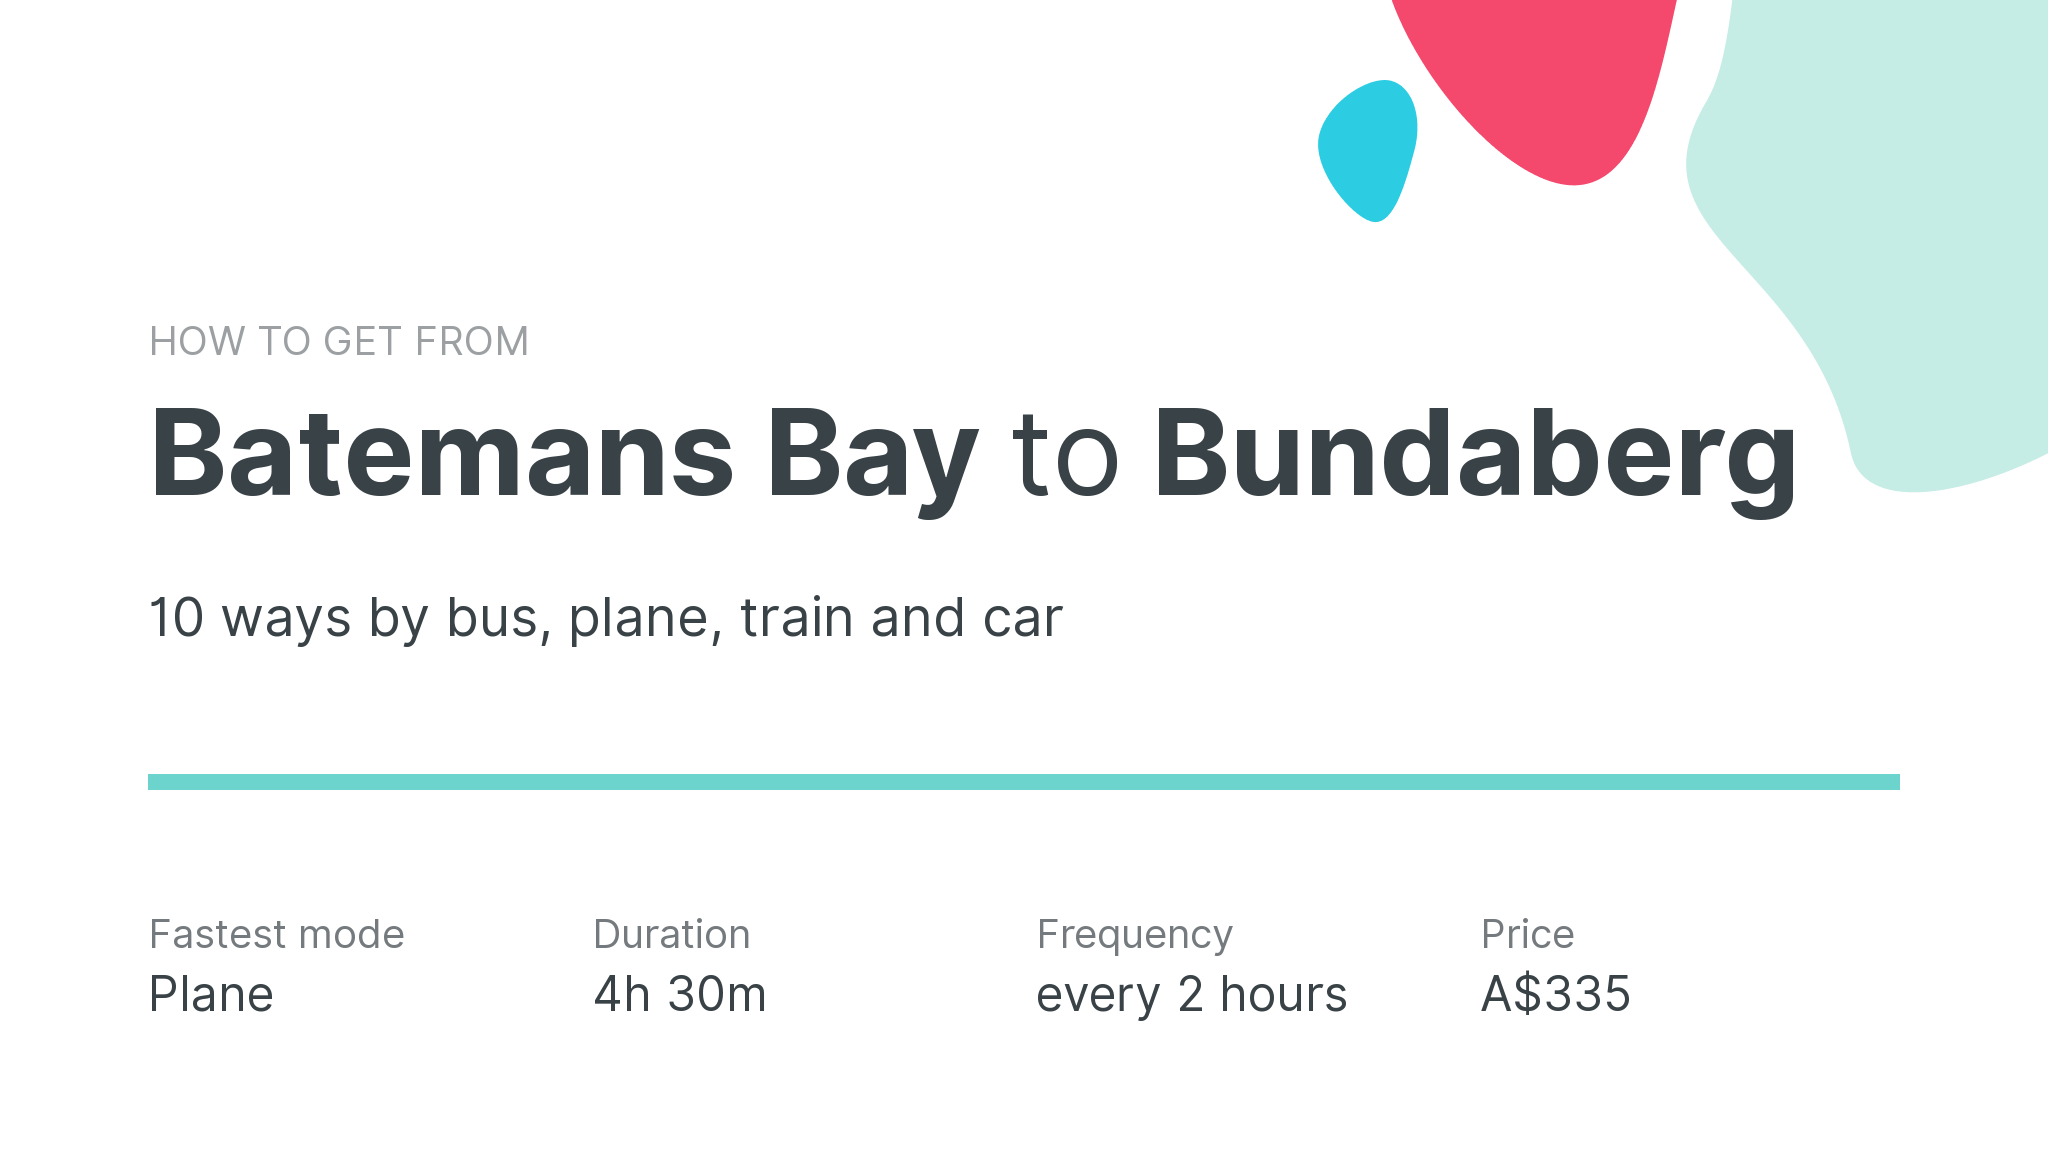 How do I get from Batemans Bay to Bundaberg